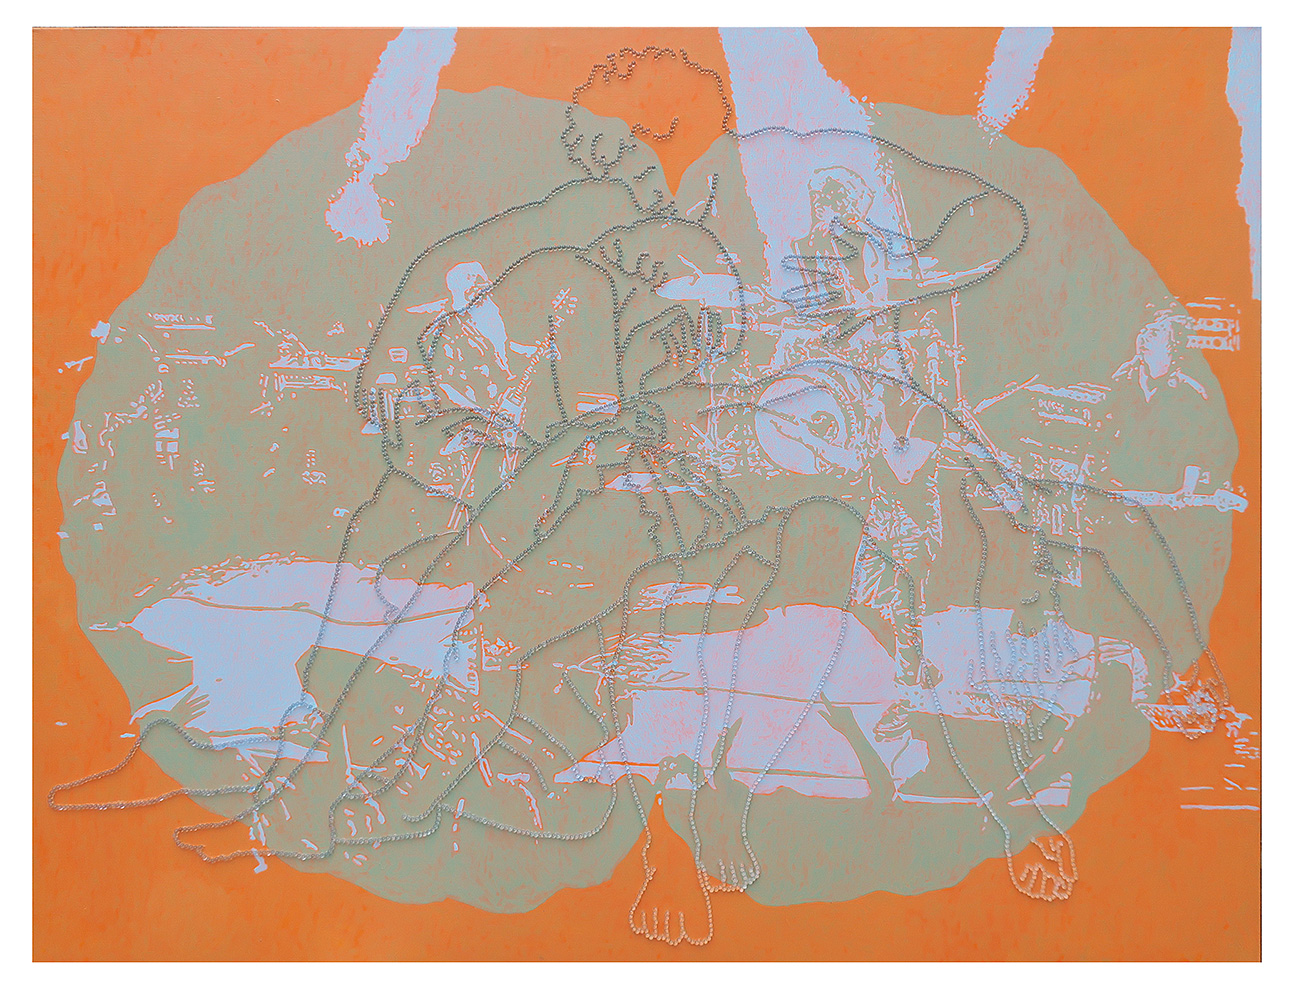 Apocalypse des Realen, 170 x 220 cm, Öl und Glaskugeln auf Leinwand, 2017